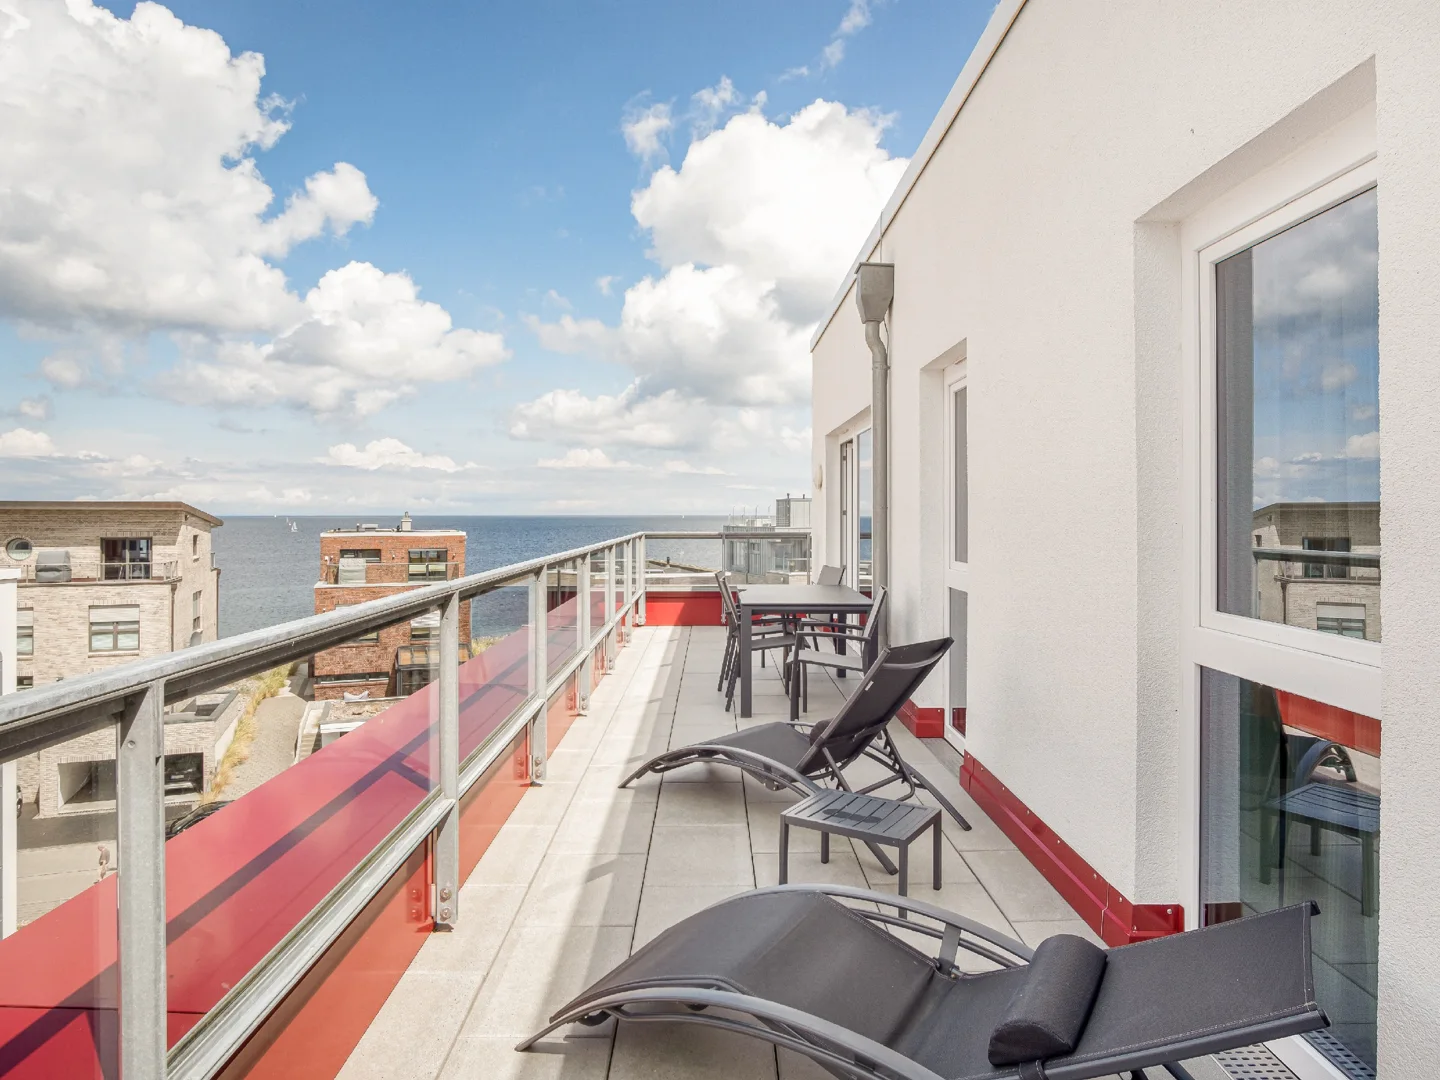 Penthouse-Wohnung mit sensationellem Wasserblick über die Ostsee und dem Olpenitzer Hafen